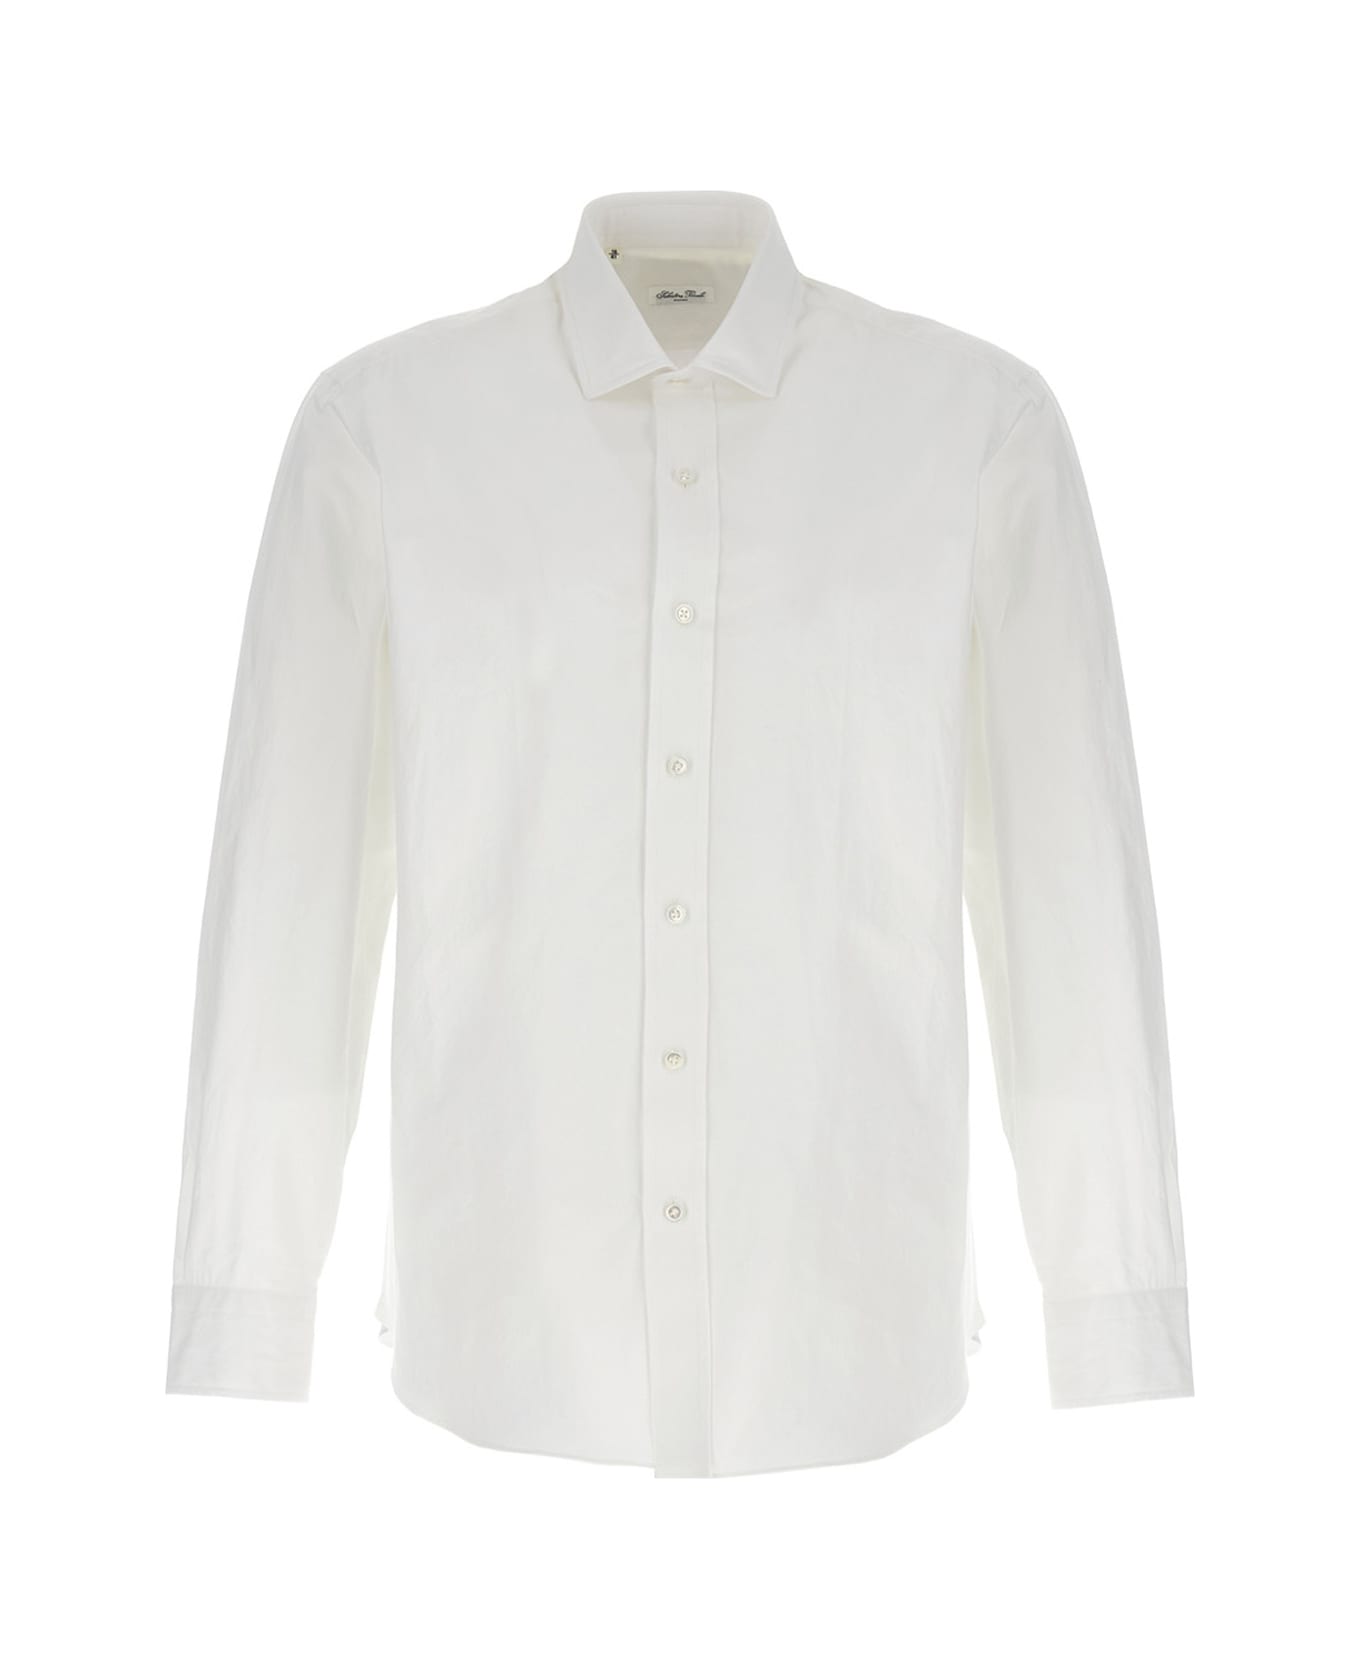 Salvatore Piccolo Cotton Shirt - White